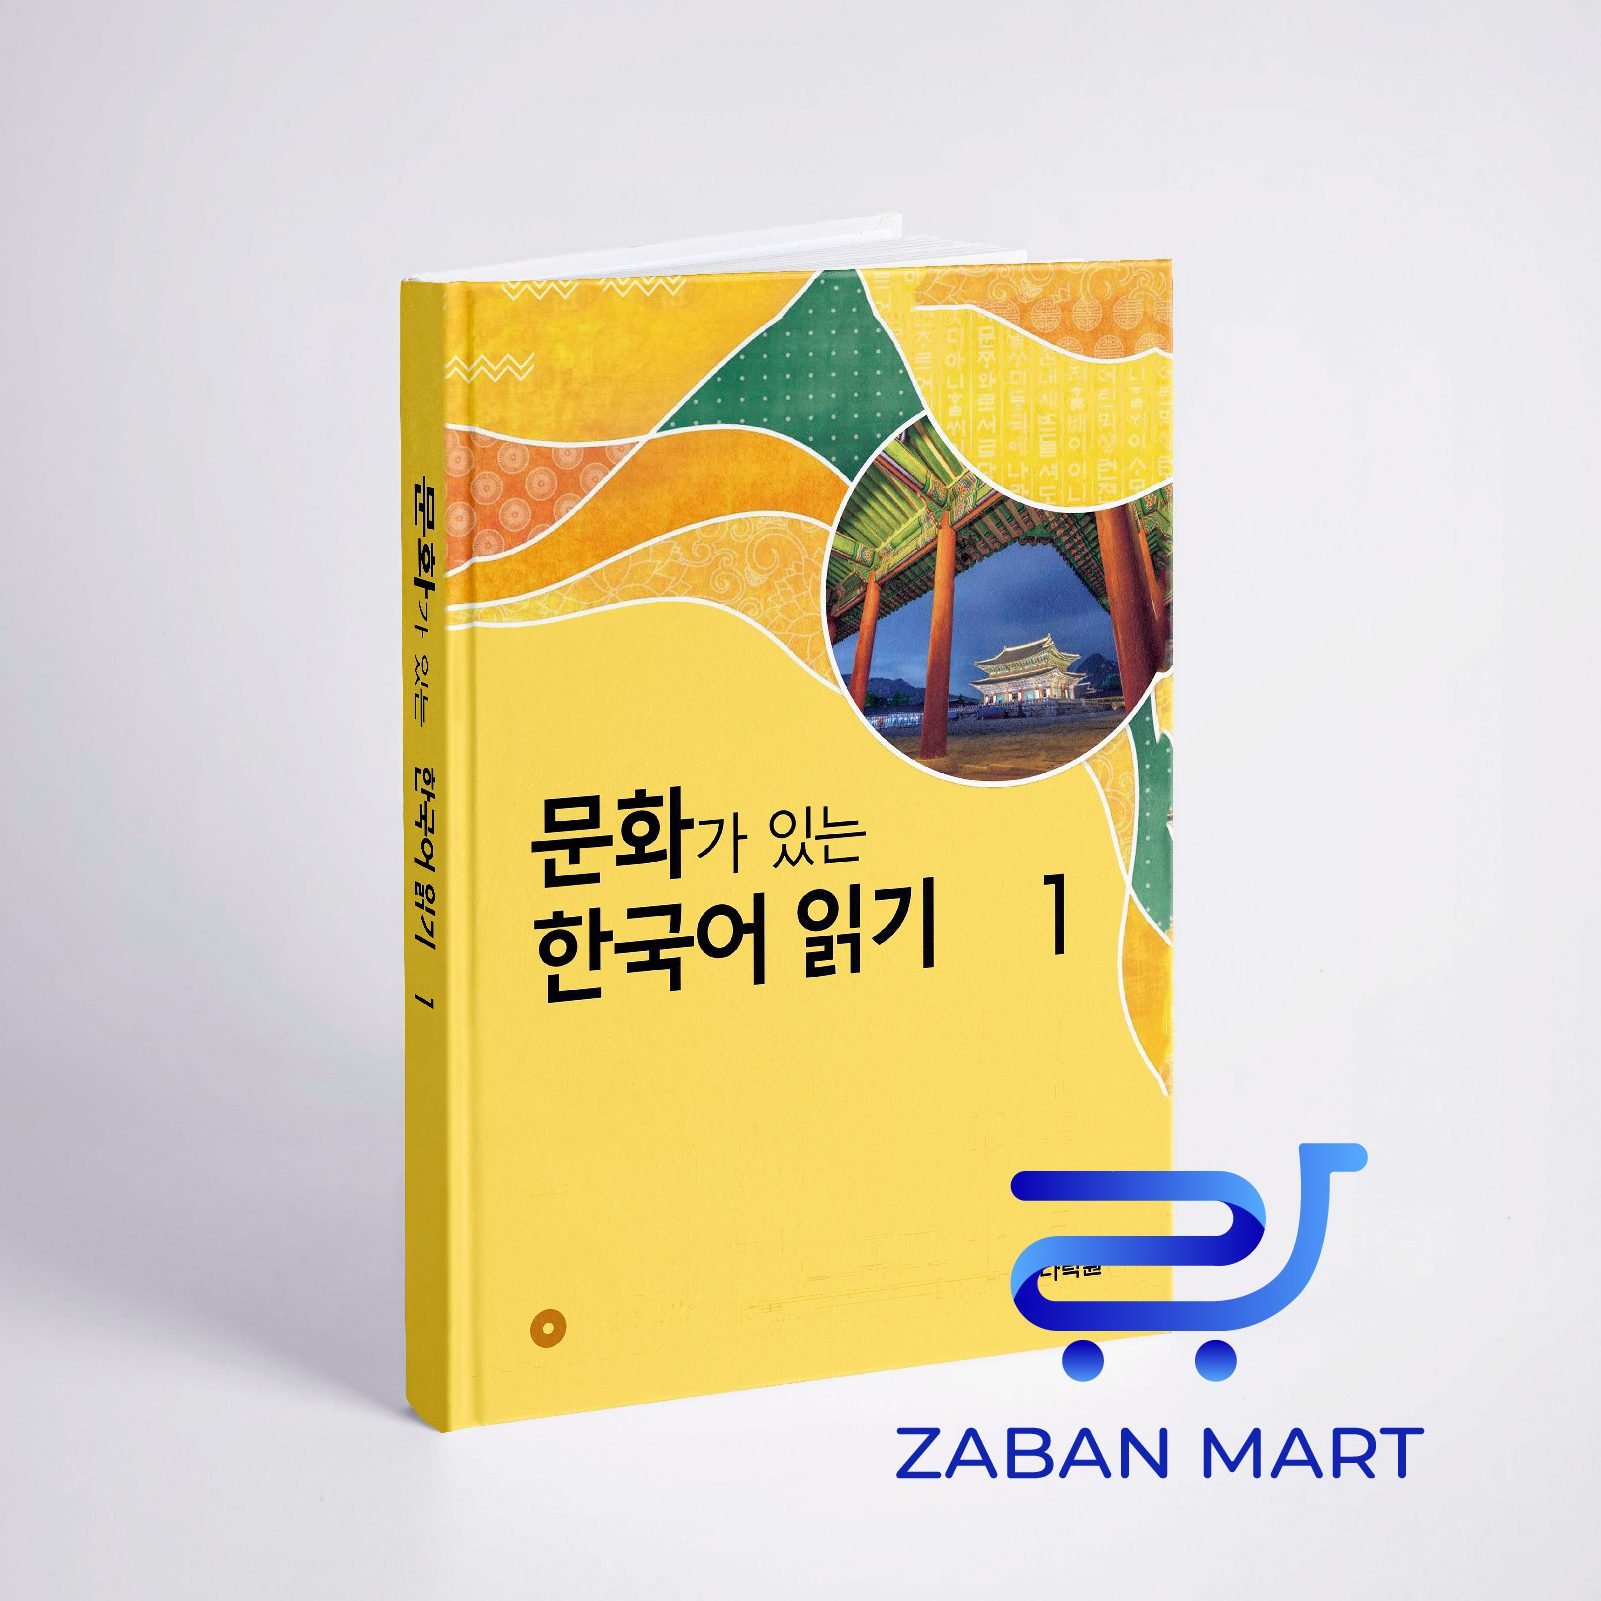 کتاب کره ای Reading Korean with Culture 1 문화가 있는 한국어 읽기 1